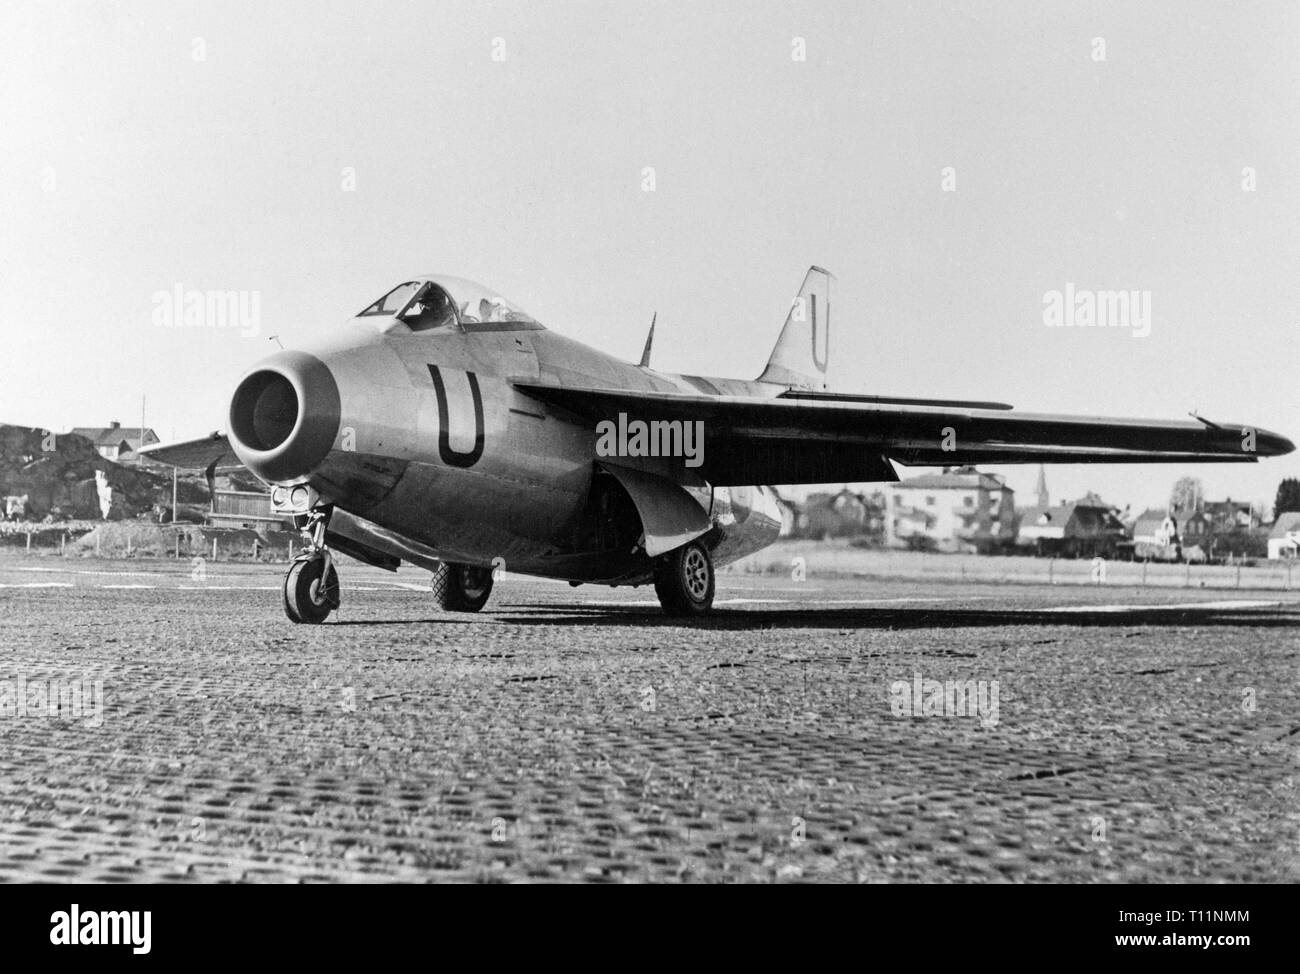 Le Saab 29 Tunnan est un chasseur suédois qui a été conçu et fabriqué par Saab dans les années 40. C'était la deuxième de la Suède à turboréacteur des avions de combat, le premier ayant été le Saab 21R ; en outre, il a été le premier combattant de l'Europe occidentale à être produit avec une aile balayée après la Seconde Guerre mondiale, le Me 262 ayant été la première pendant la guerre. Malgré son aspect bouffi, d'où son nom vient, le J 29 était un avion rapide et agile pour son époque. Il a servi de manière efficace dans les fighter et rôles Le chasseur-bombardier dans les années 70. Banque D'Images